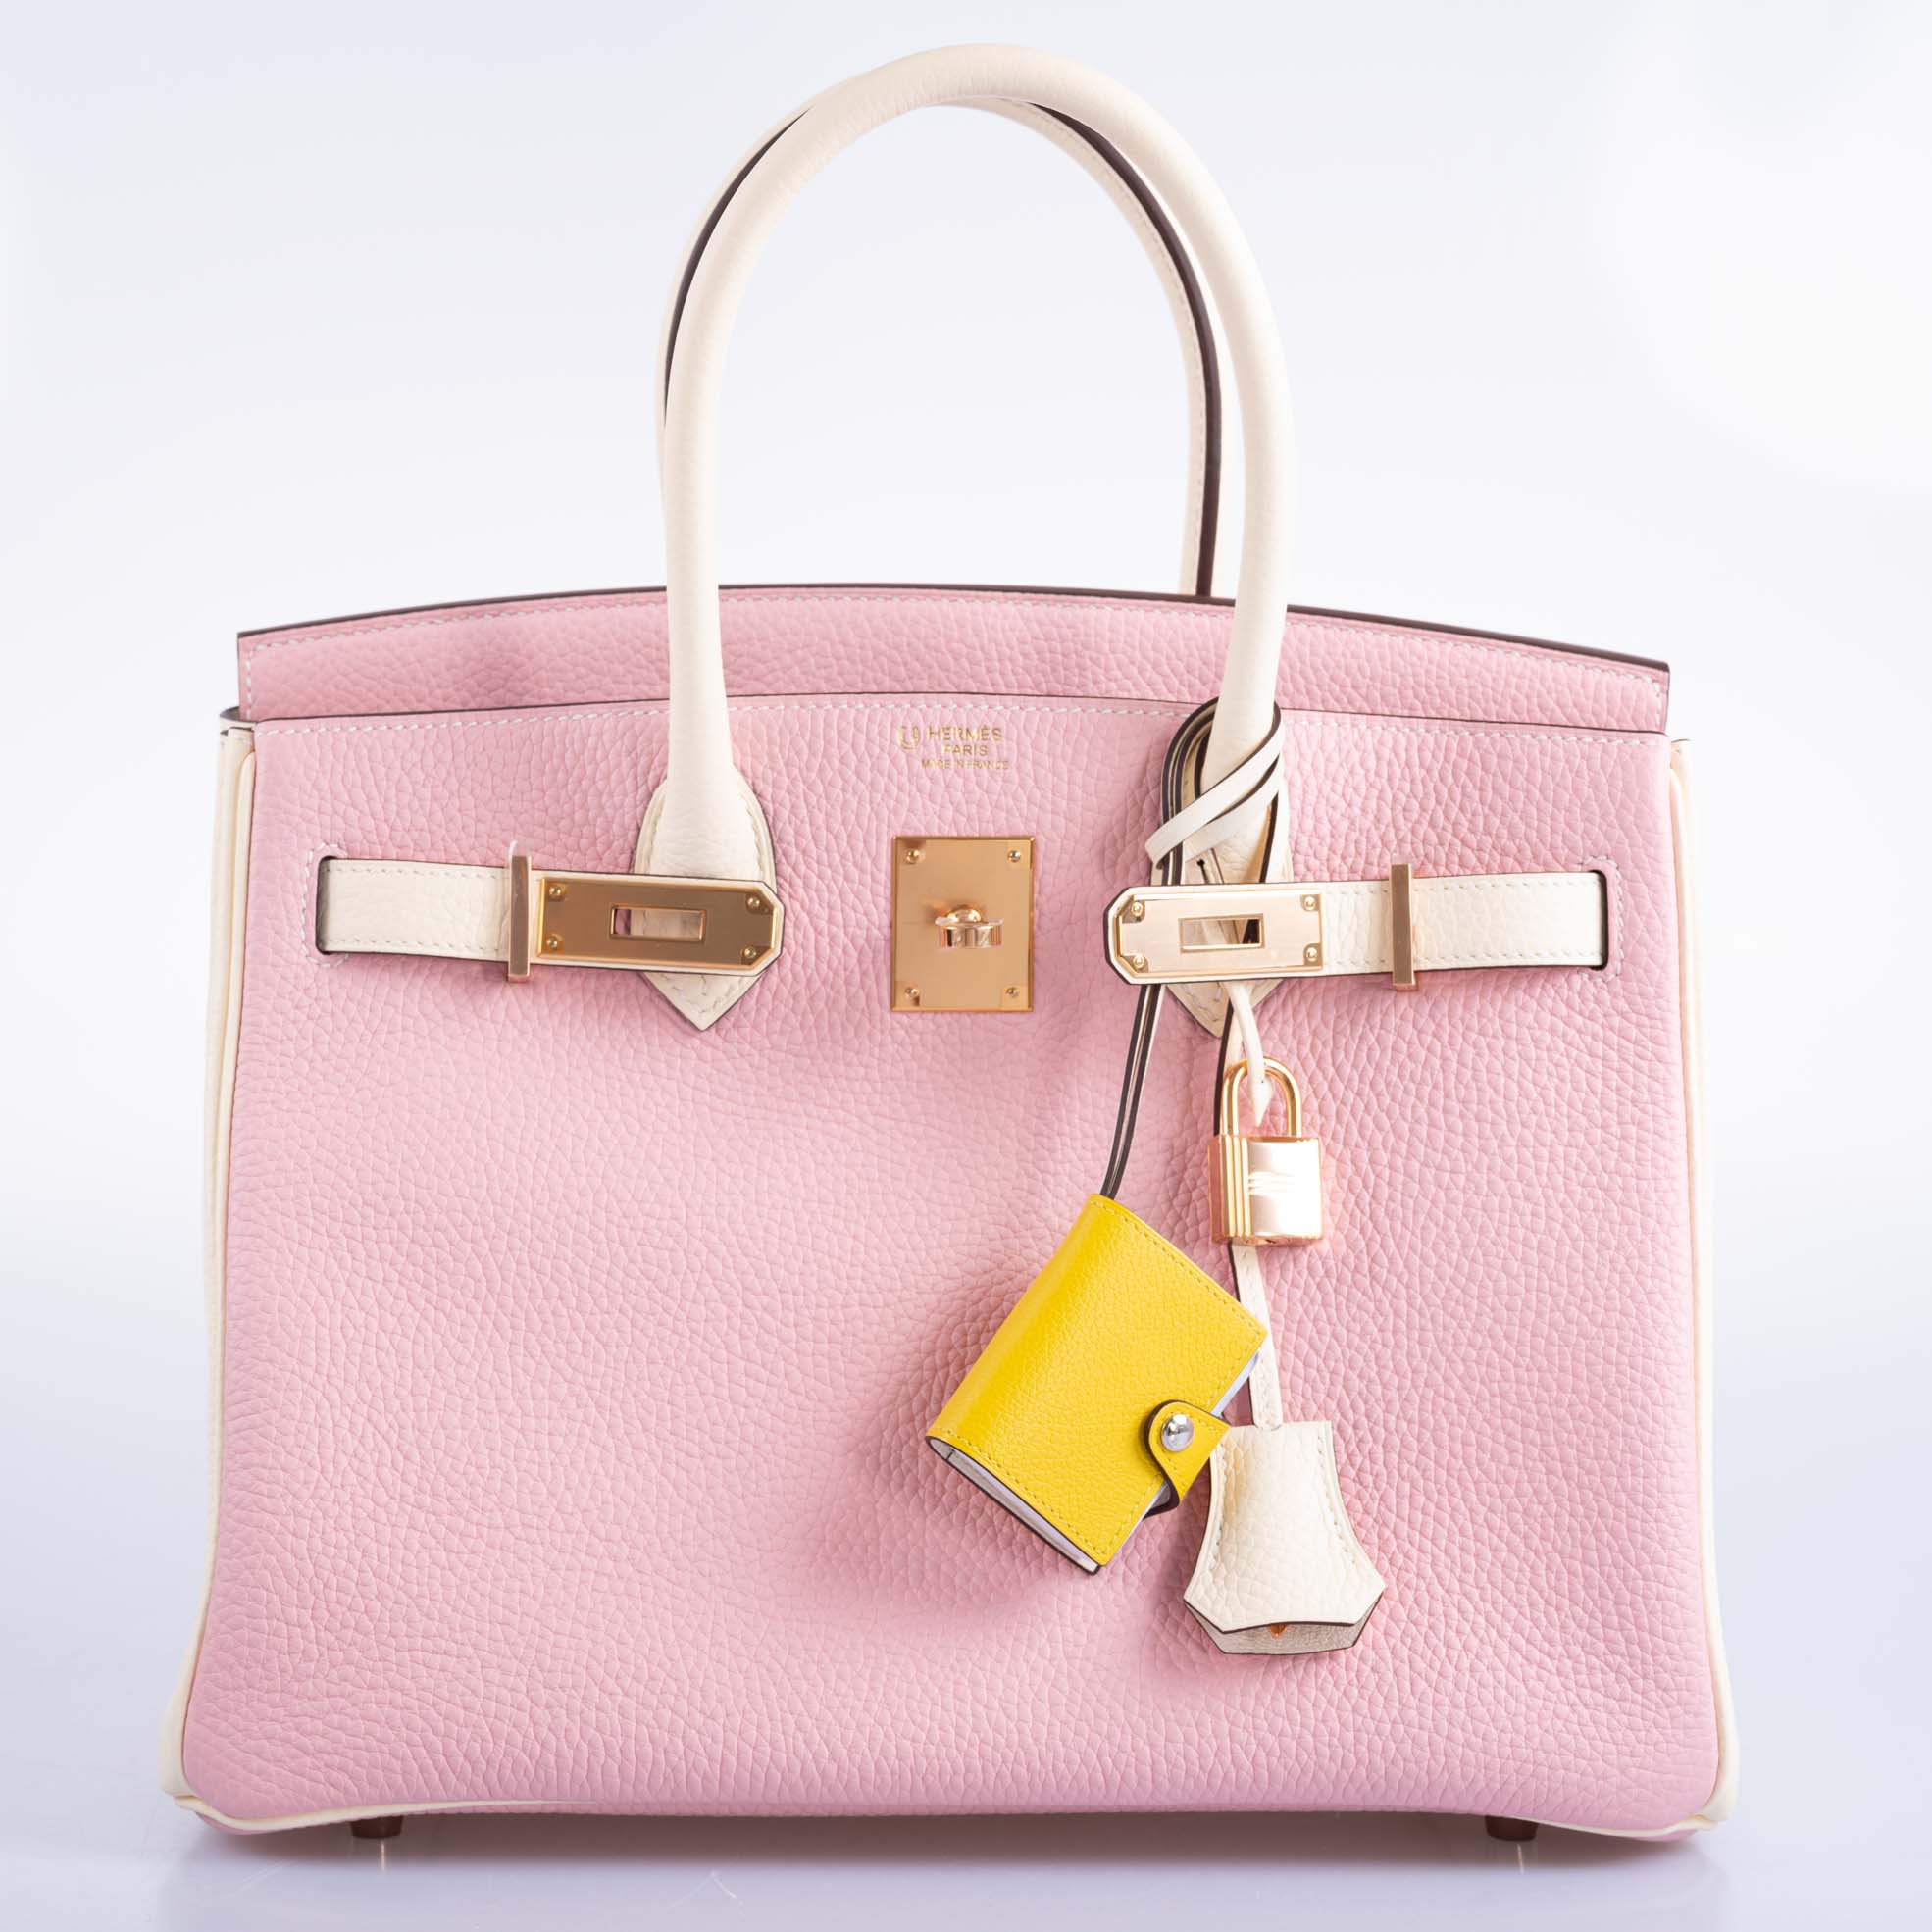 Hermès HSS Birkin 30 Rose Sakura and Craie Clemence with Rose Gold Hardware